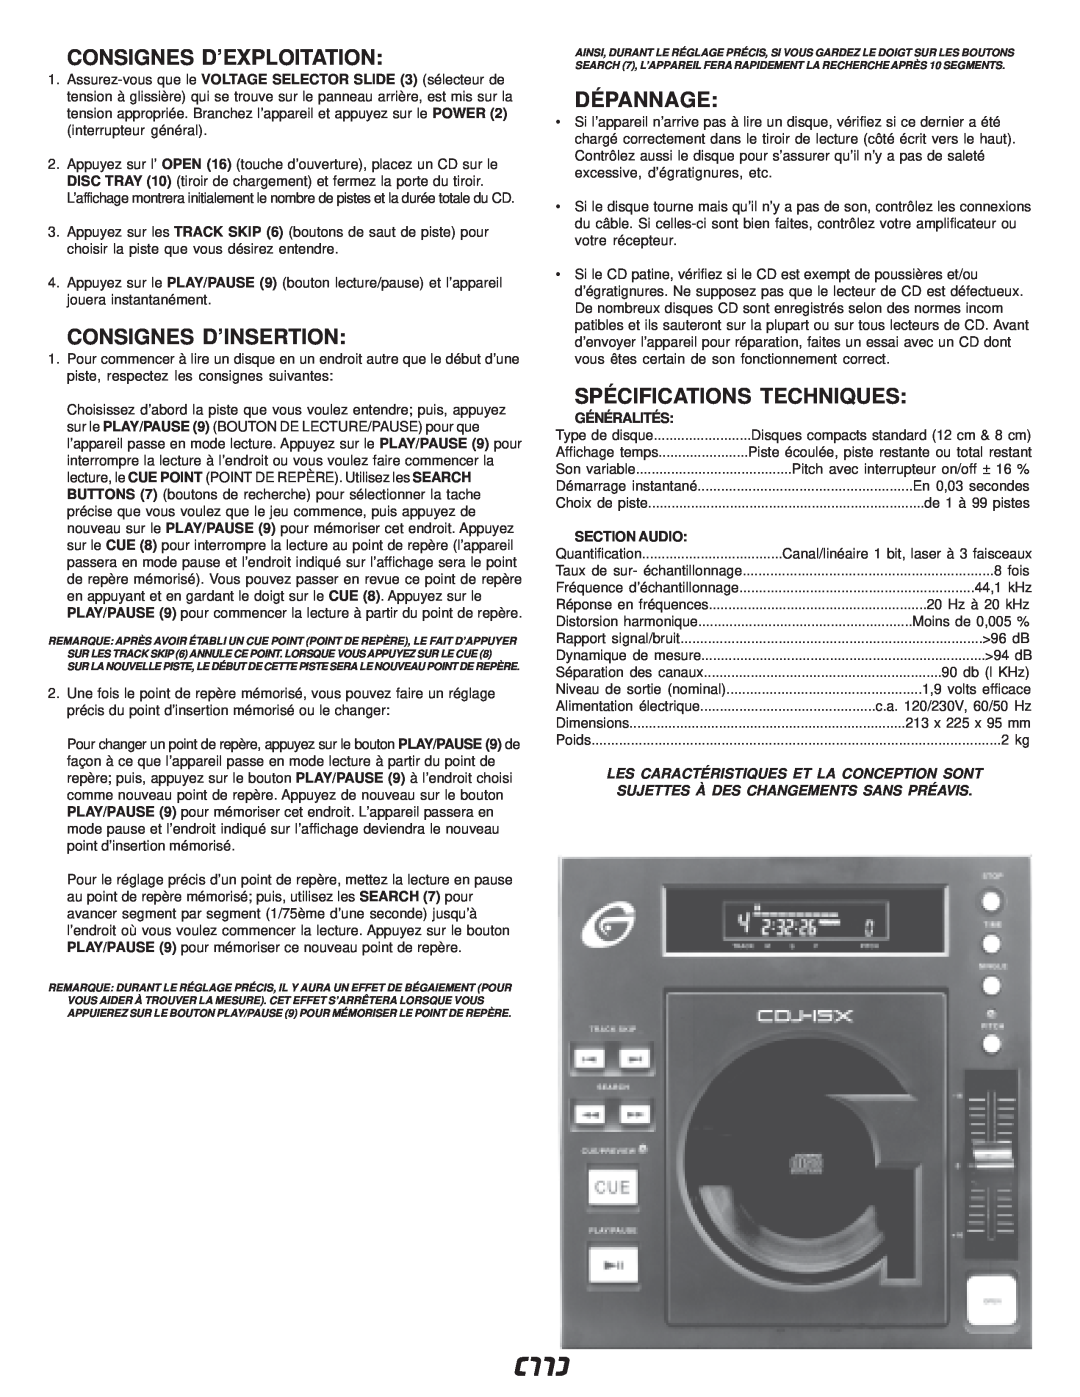 Gemini CDJ-15X manual Consignes D’Exploitation, Consignes D’Insertion, Dépannage, Spécifications Techniques, Généralités 